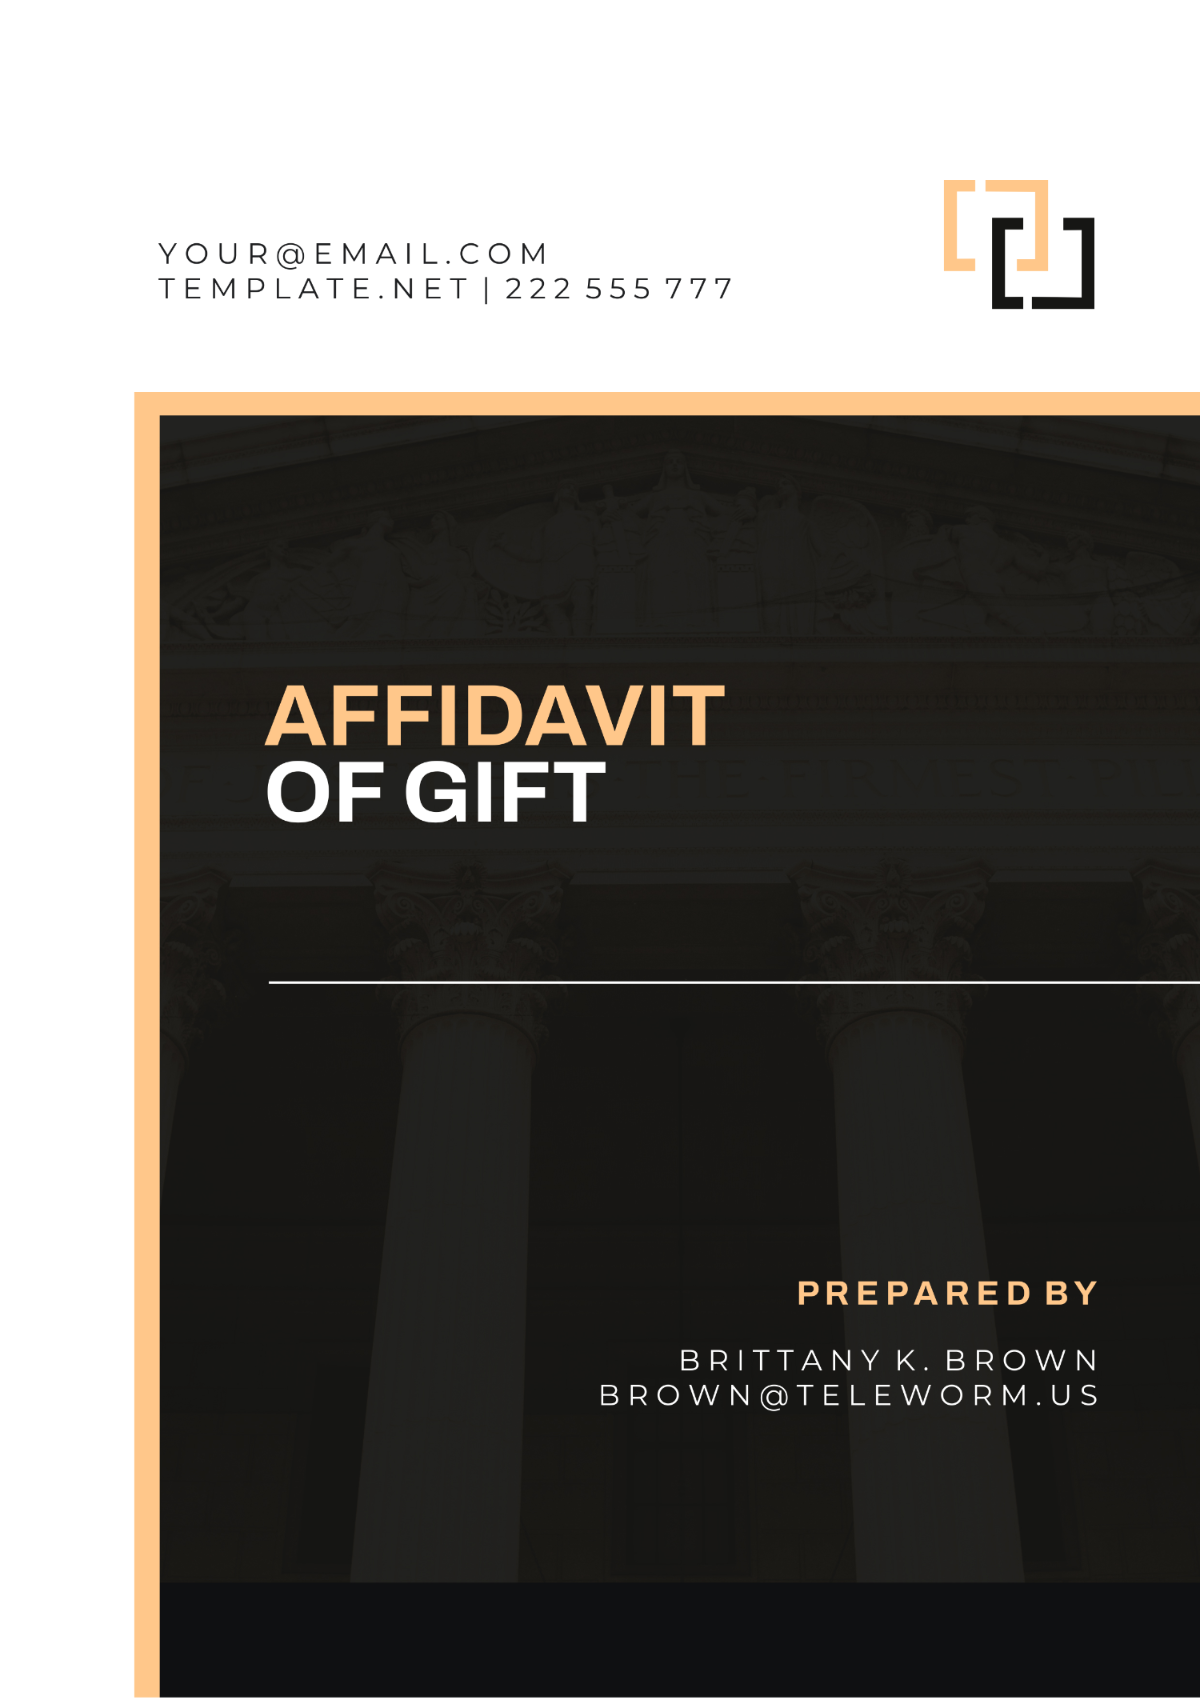 Delaware Affidavit of Gift Template